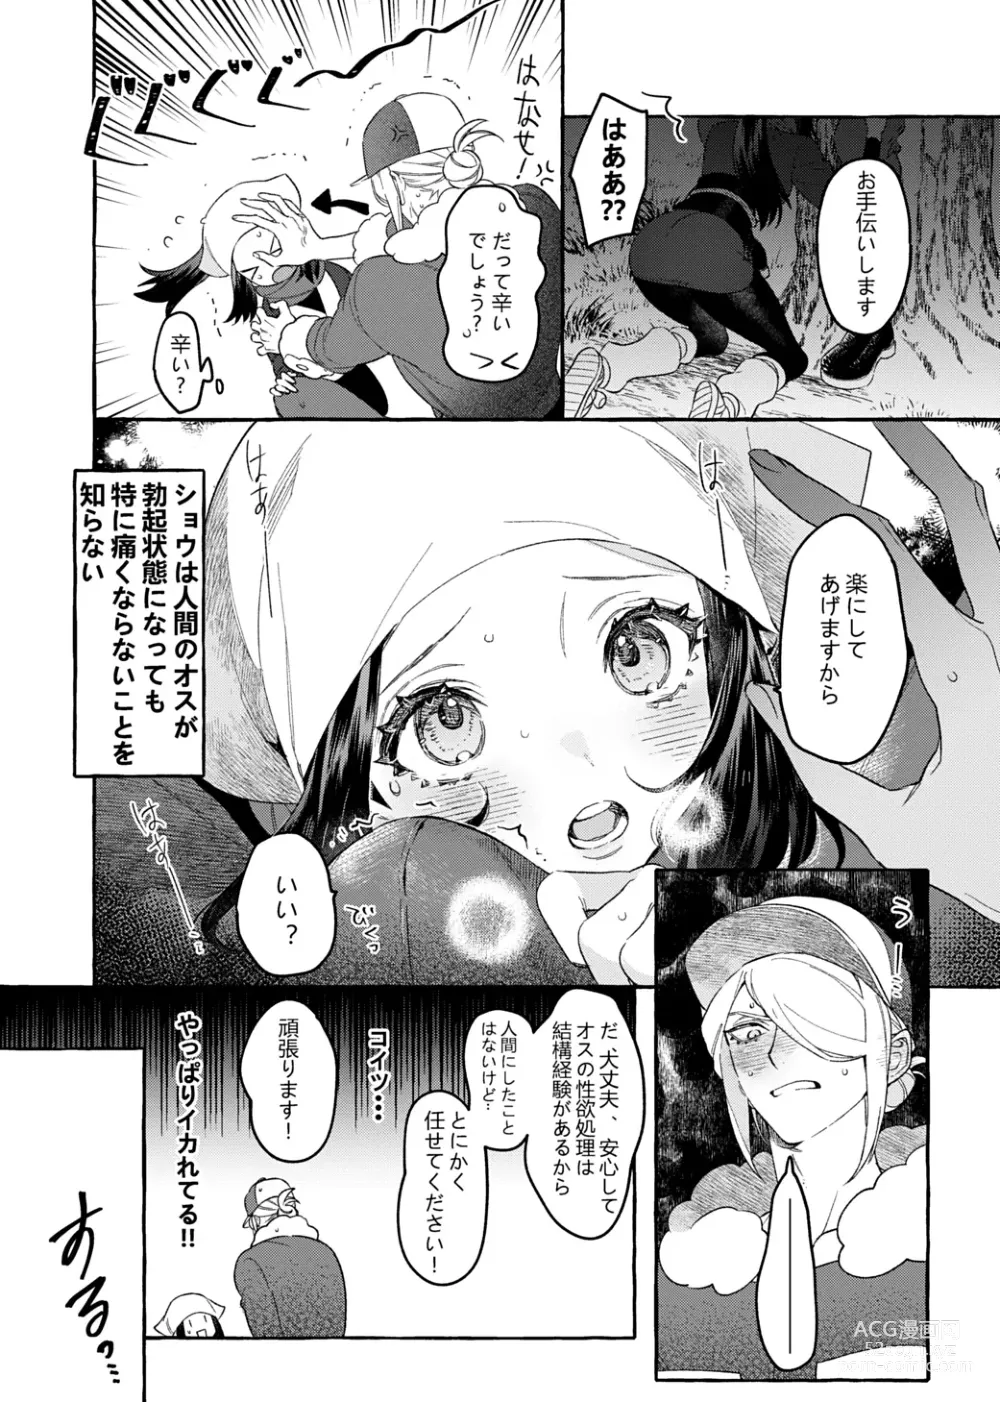 Page 11 of doujinshi Yosomono no Kuse ni